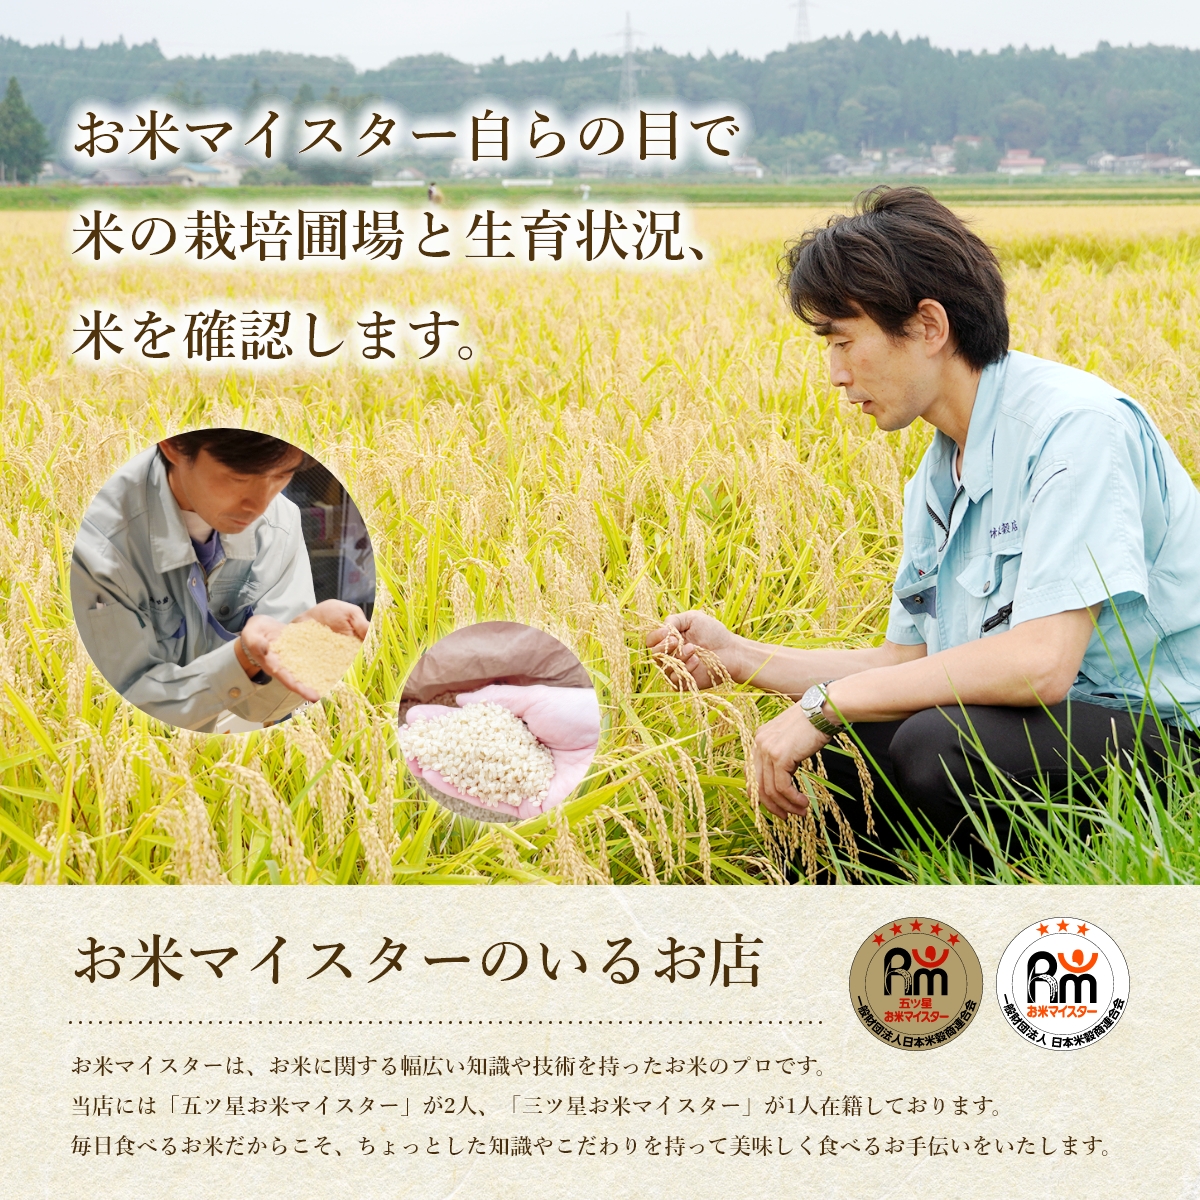 【3か月定期便】盛岡市産お米3種食べ比べ【5kg×3袋】×3か月